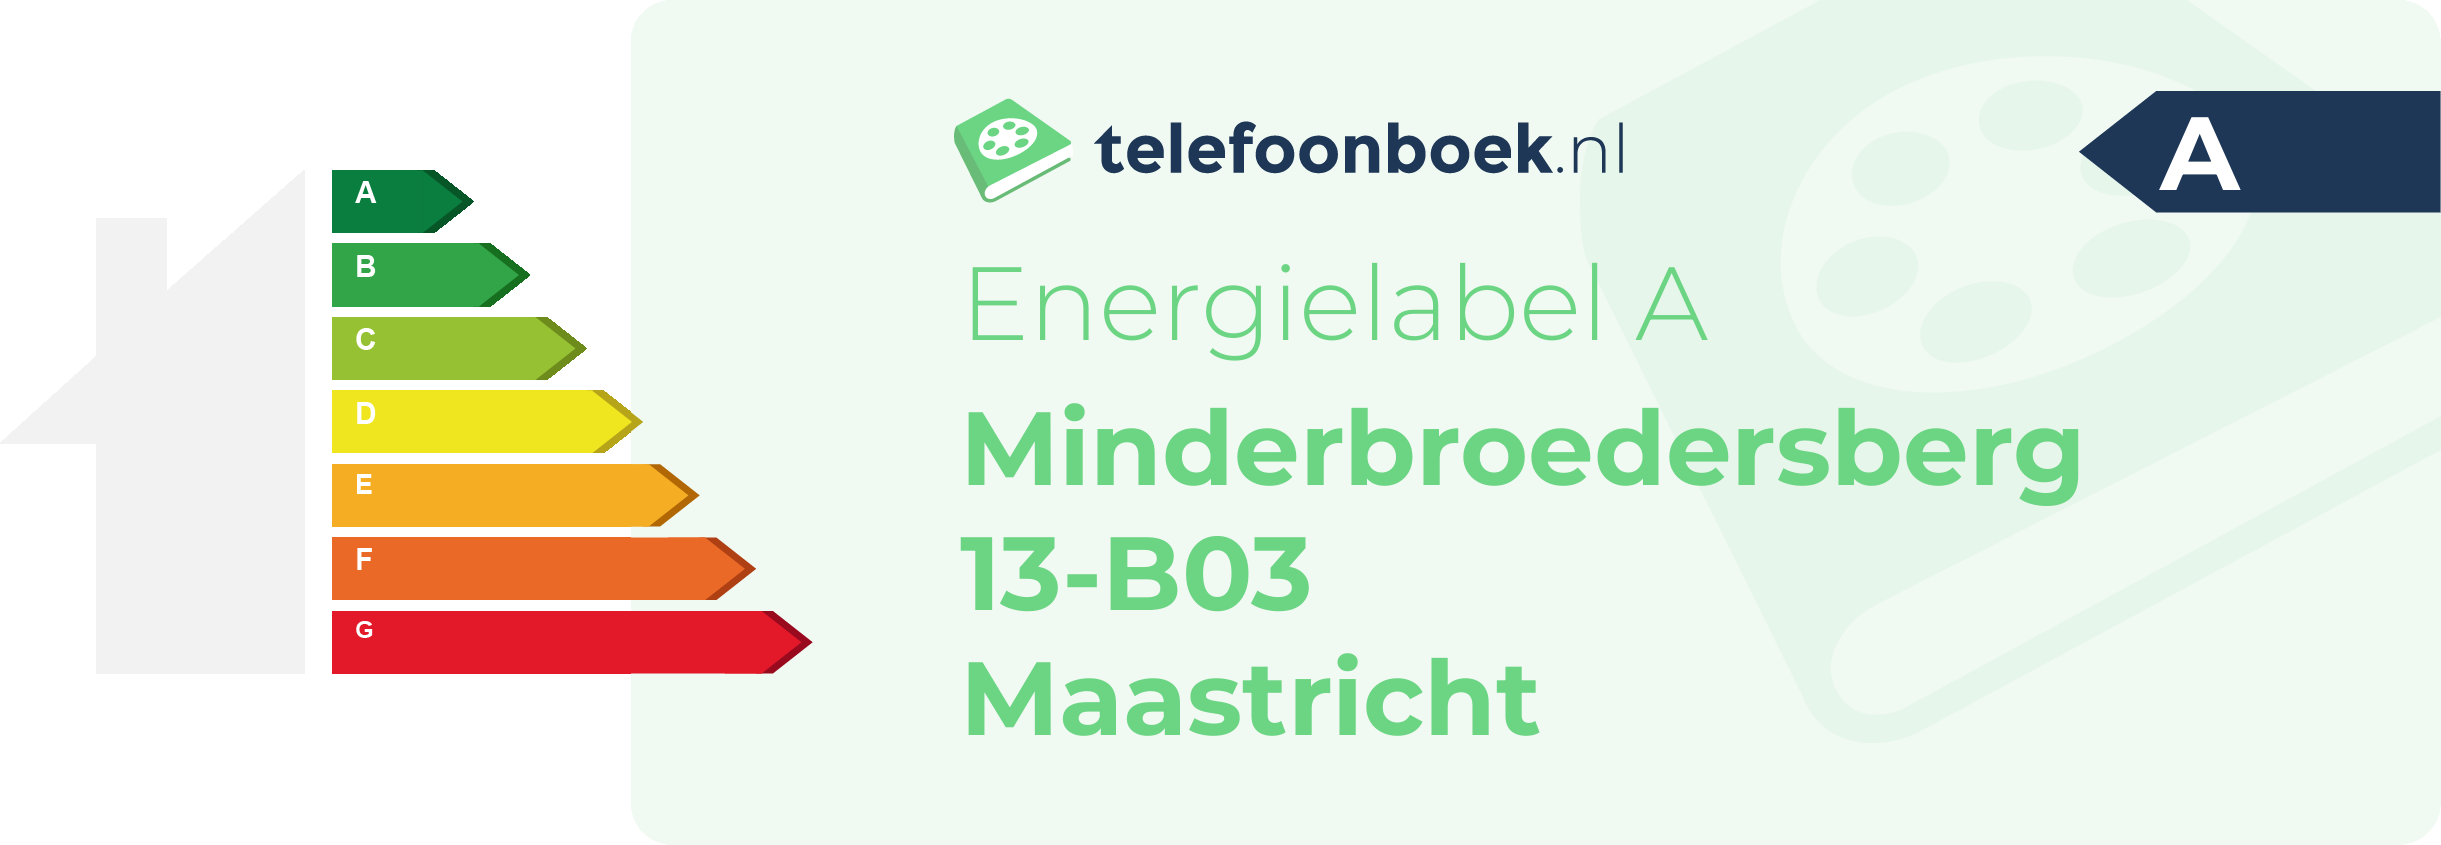 Energielabel Minderbroedersberg 13-B03 Maastricht